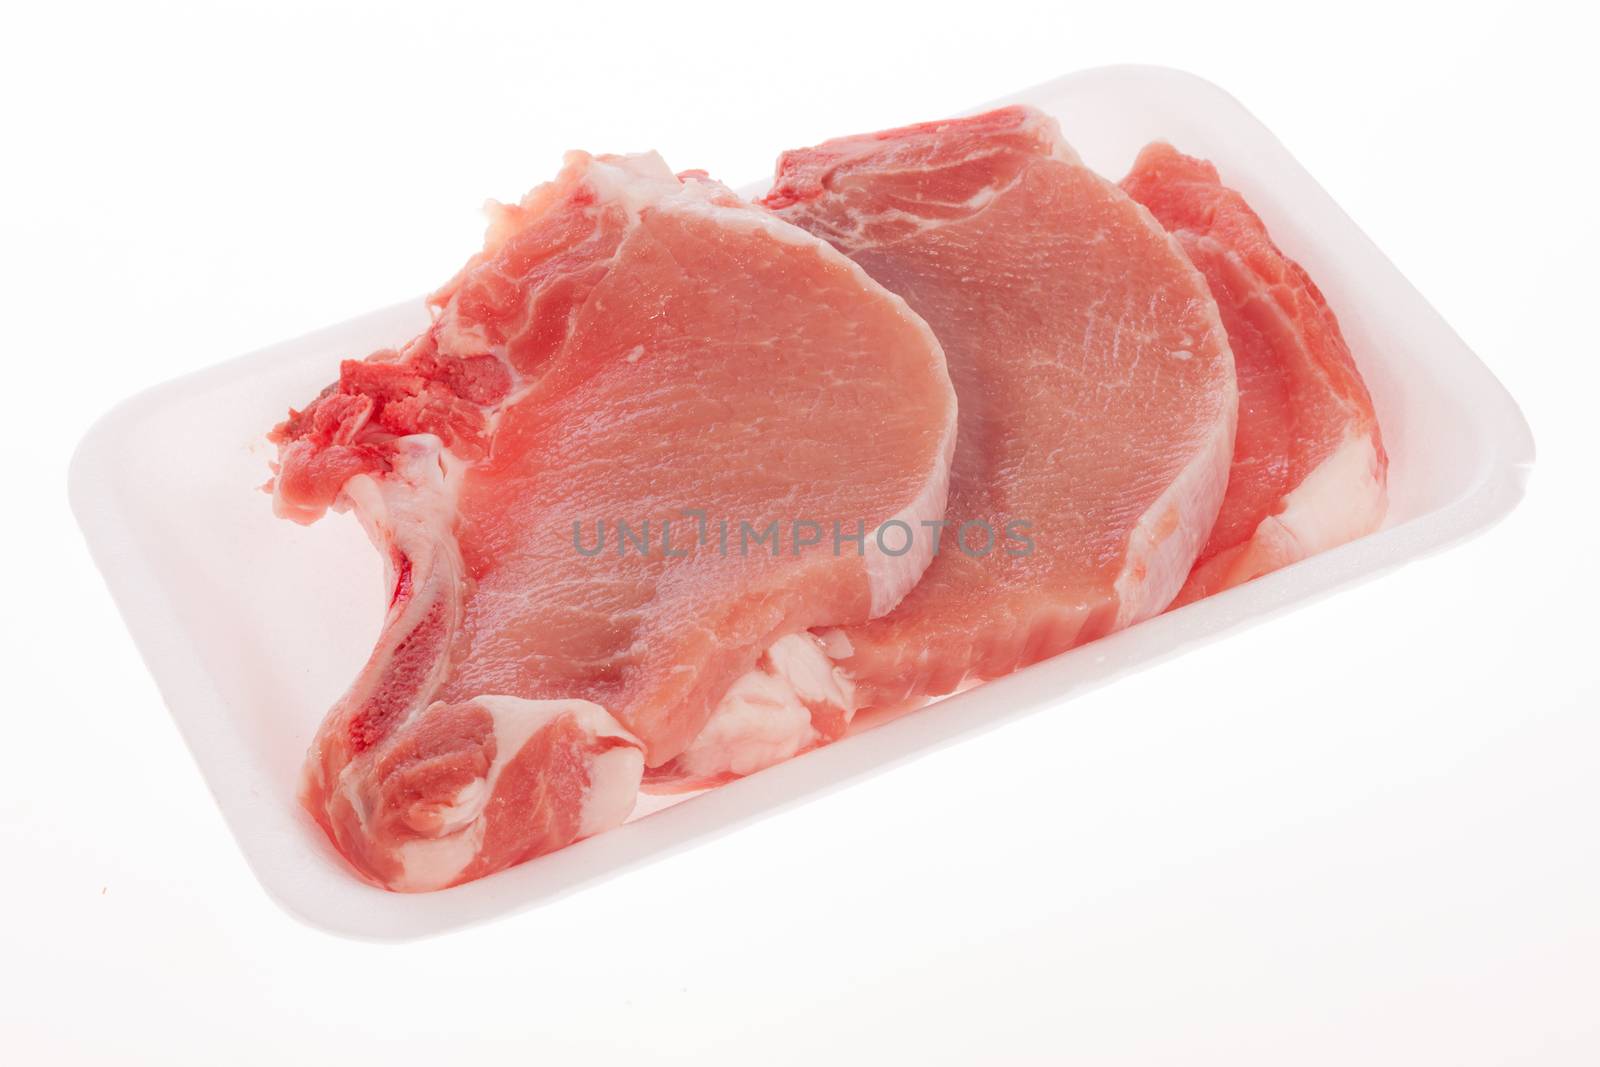 Raw pork chop in styrofoam packaging tray